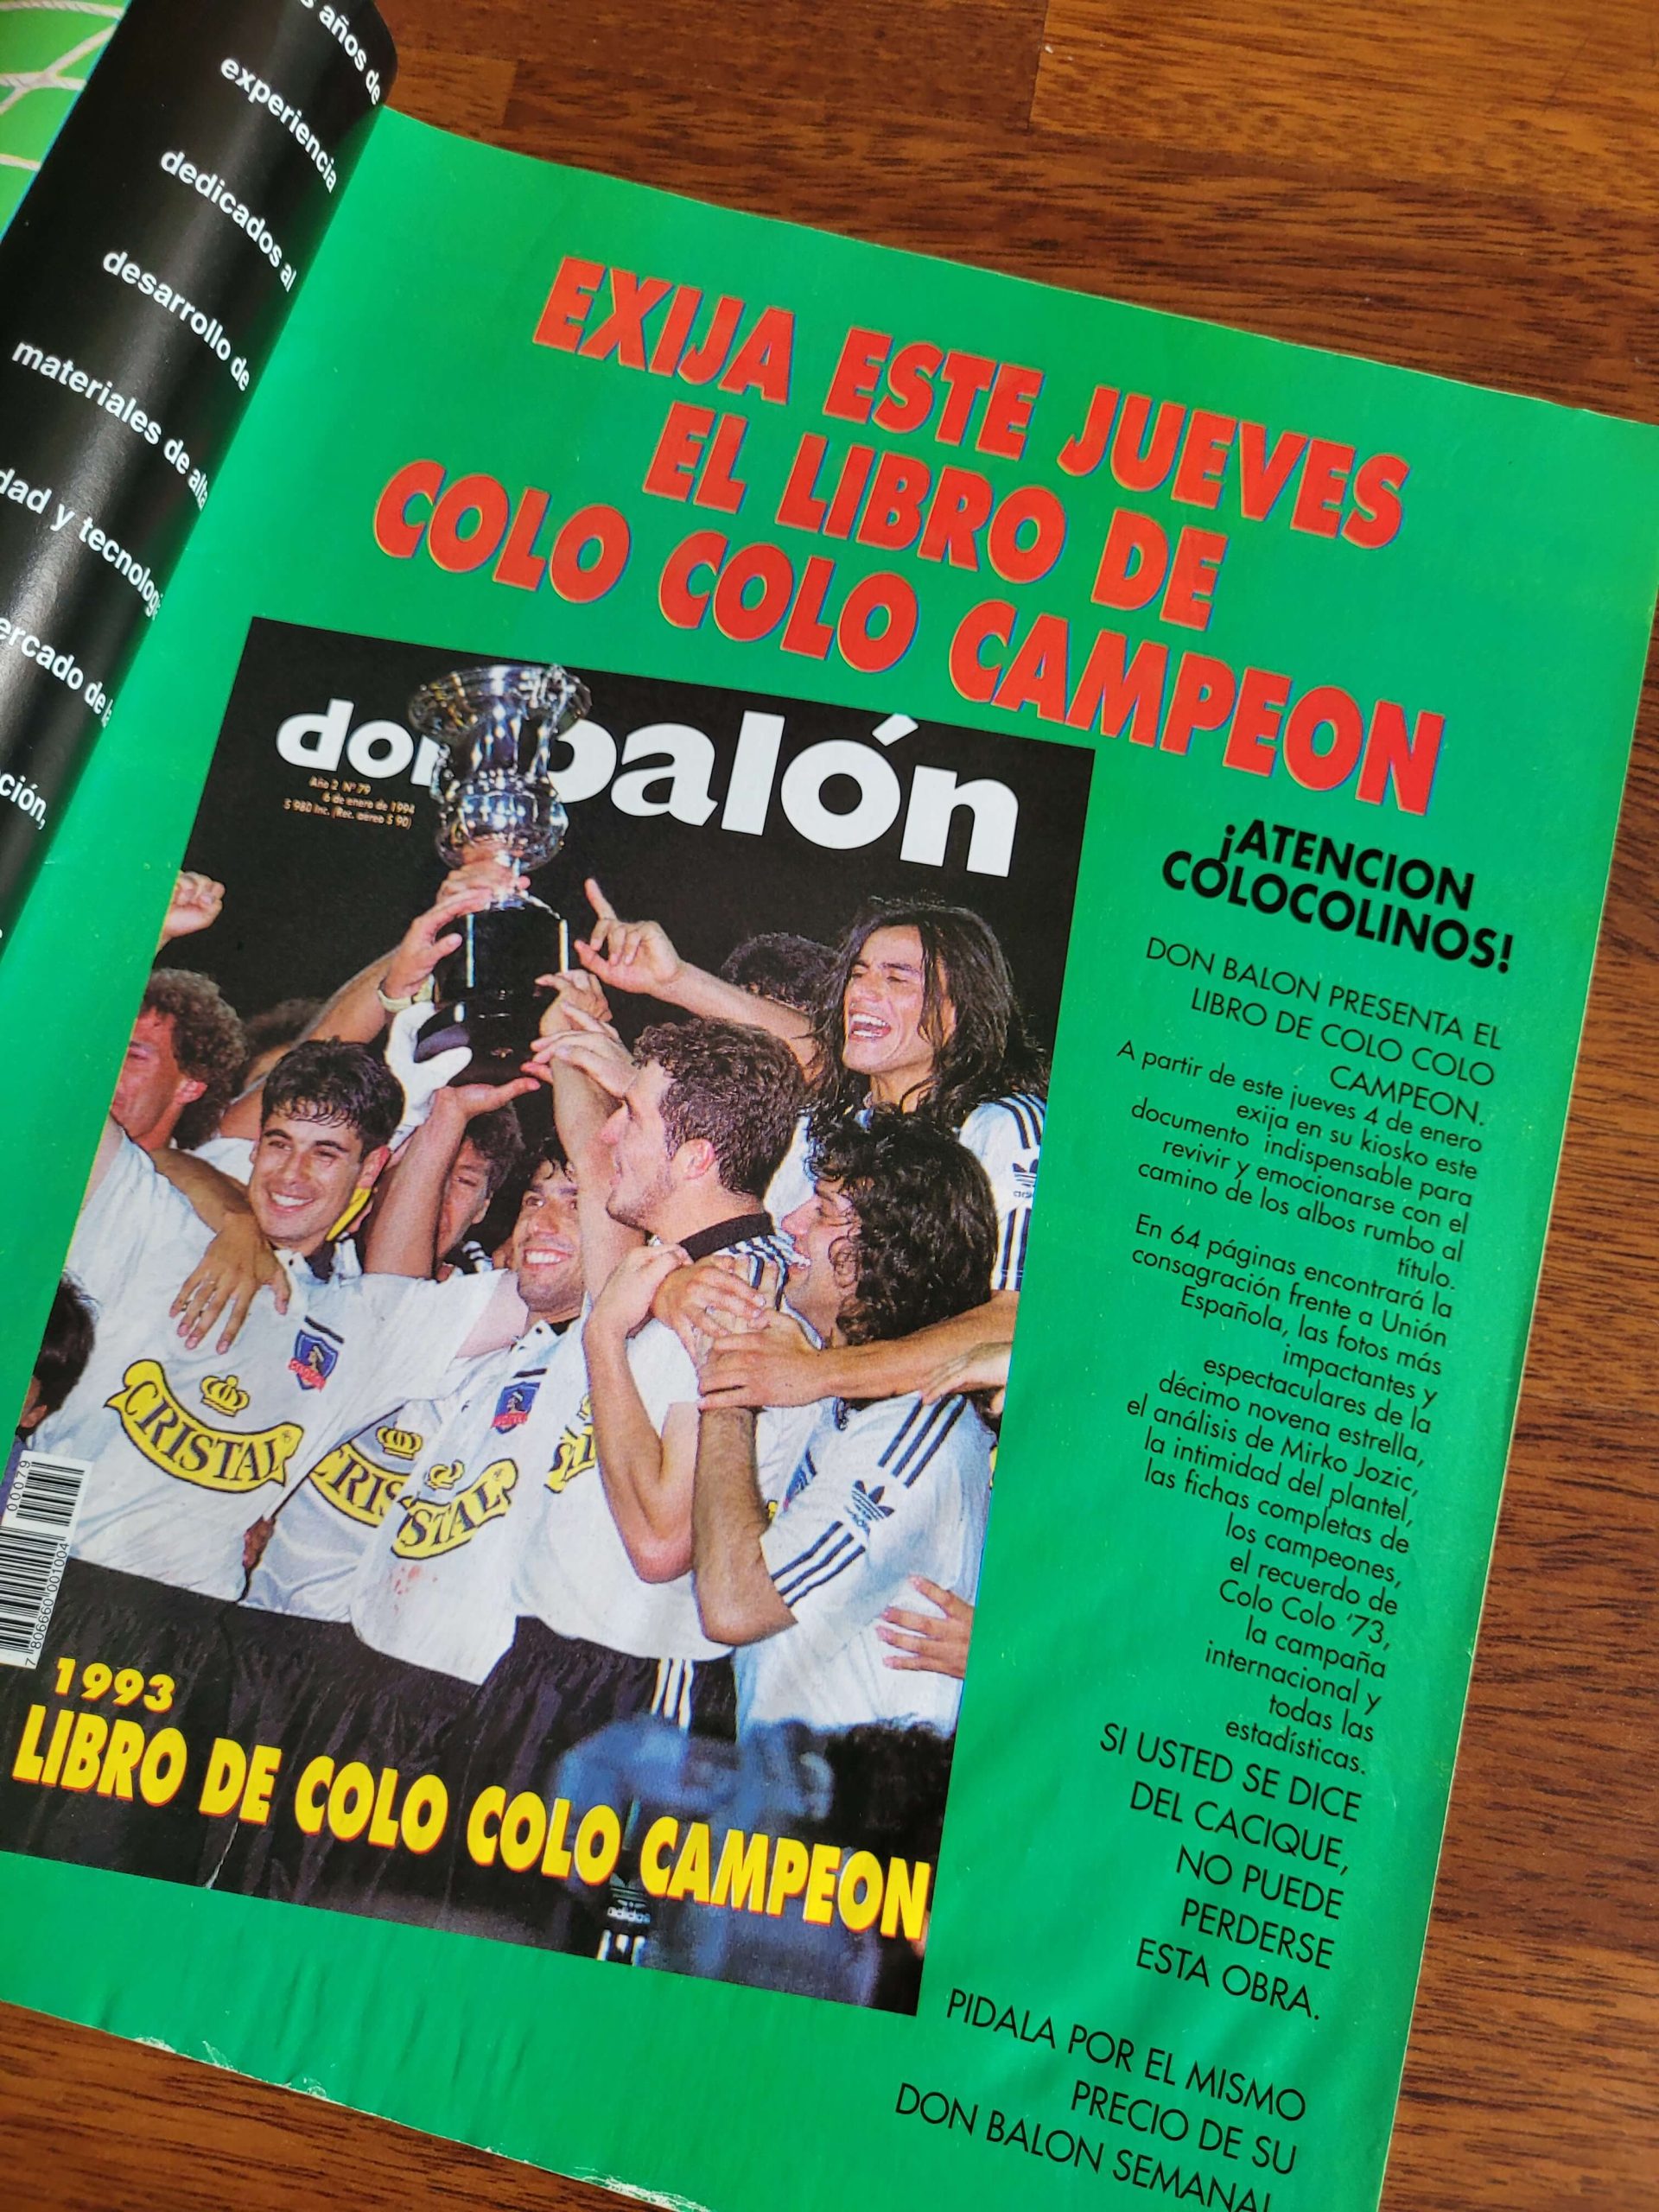 (1993) Don Balón Colo Colo campeón 93